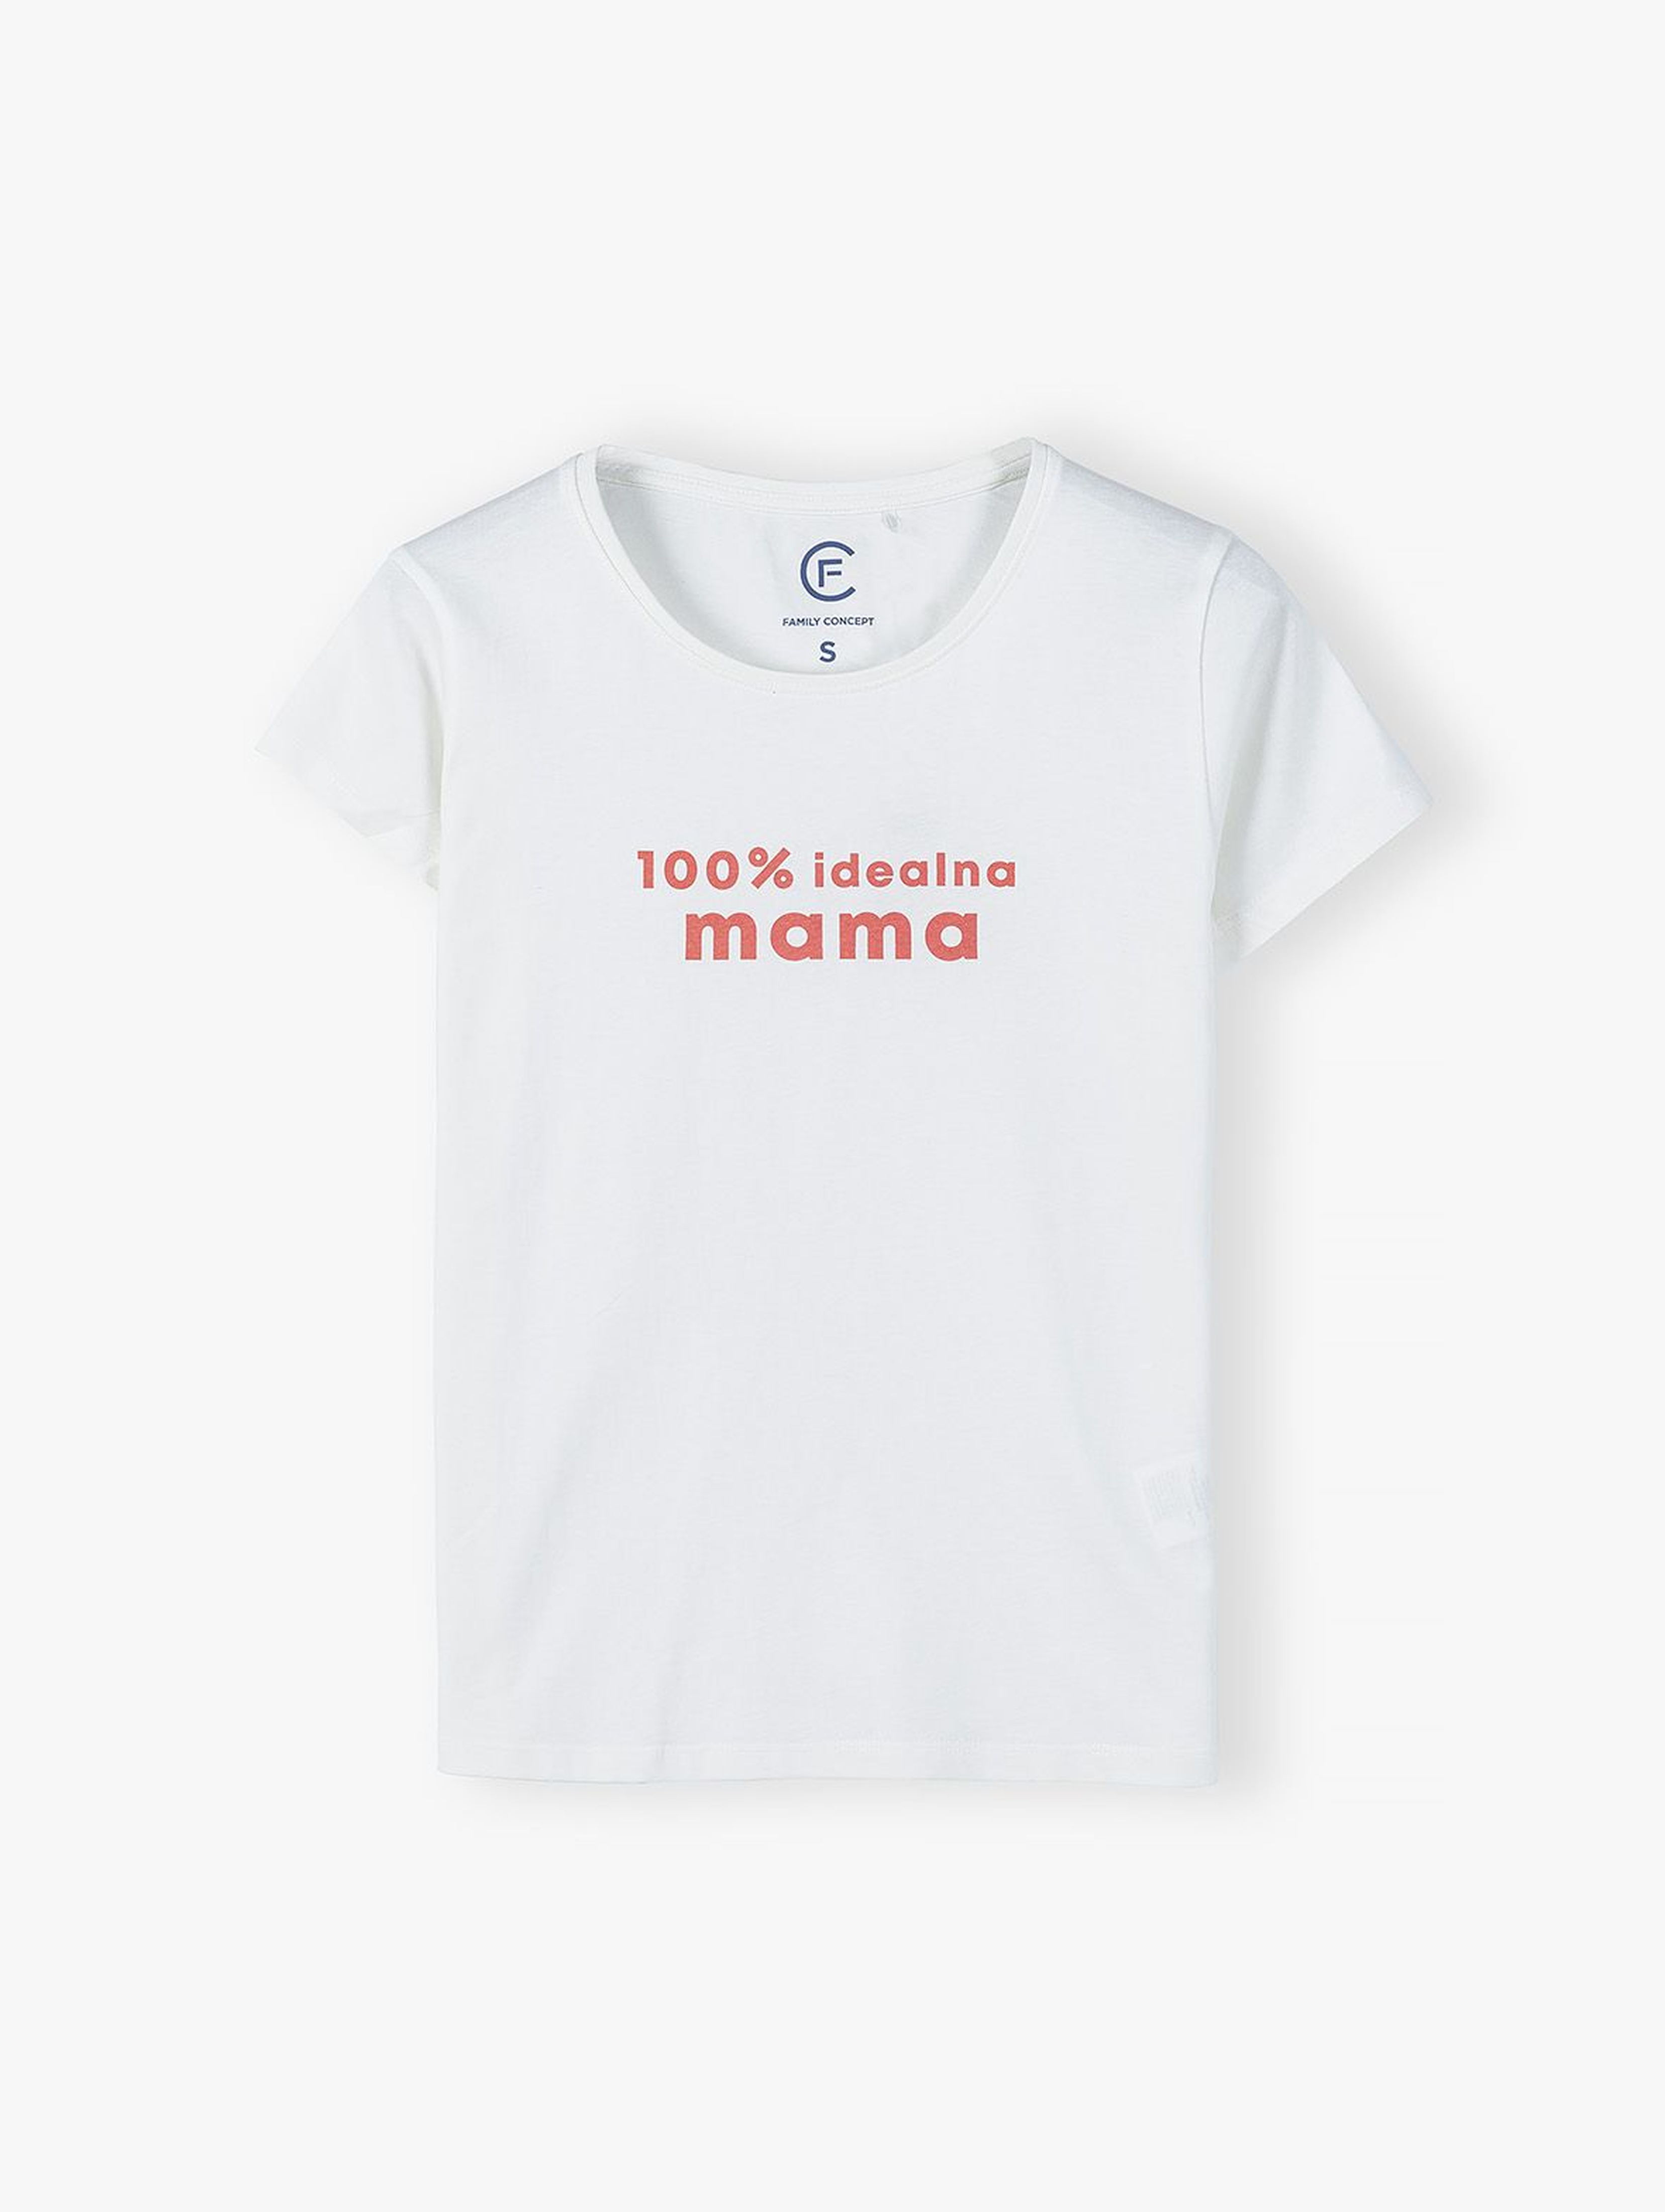 Bawełniany t-shirt damski biały - 100% idealna mama